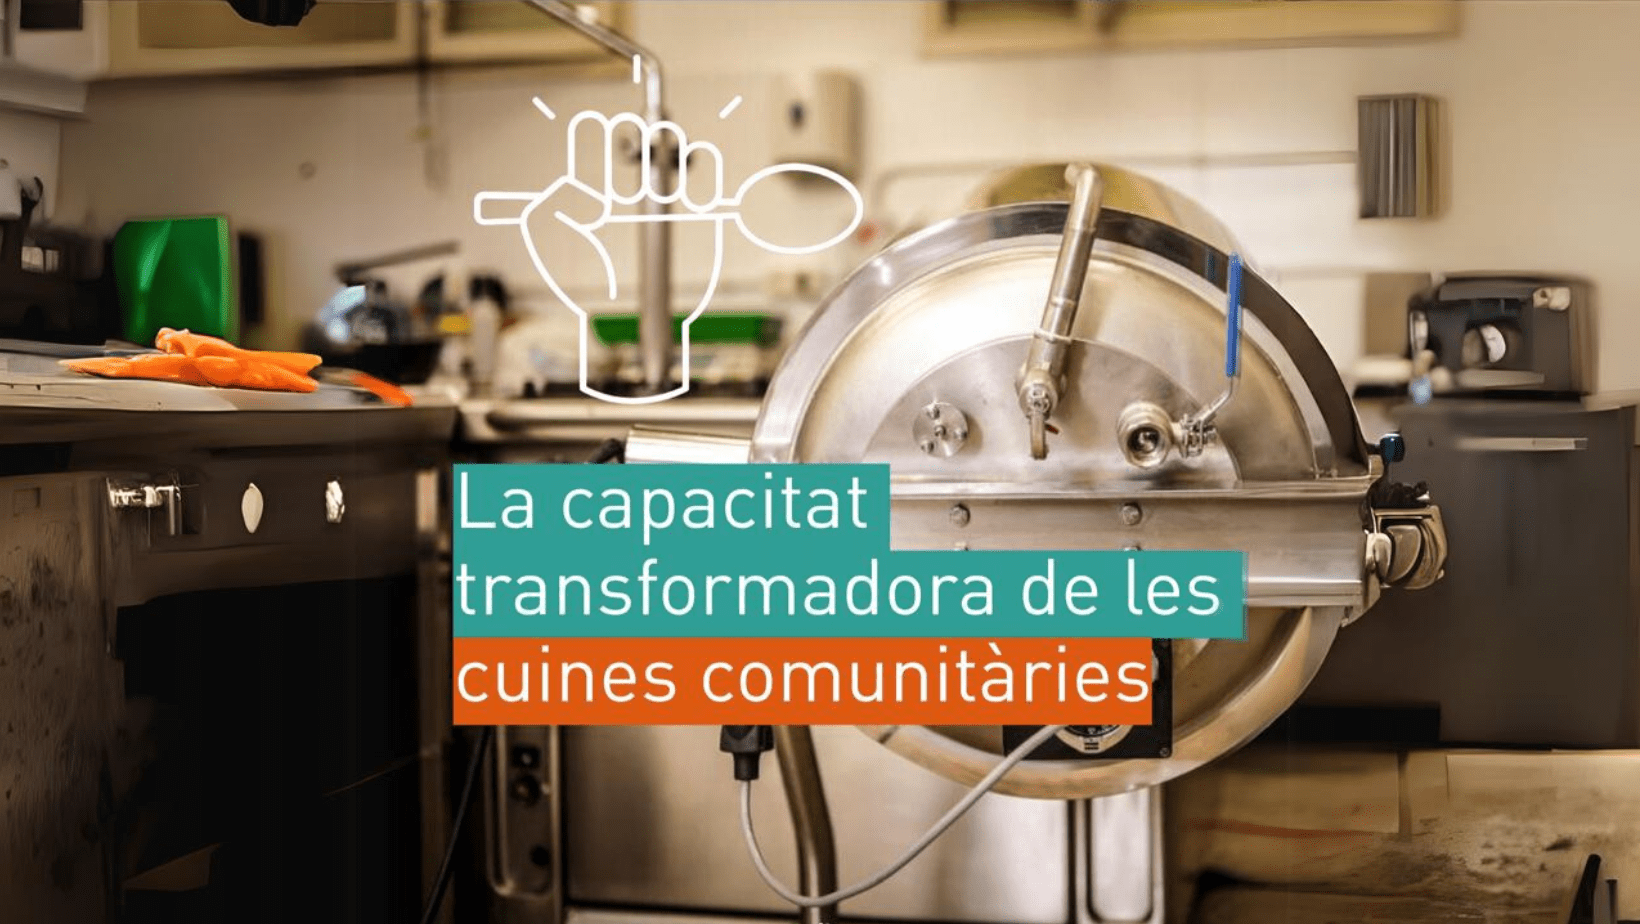 La capacitat transformadora de les cuines comunitàries